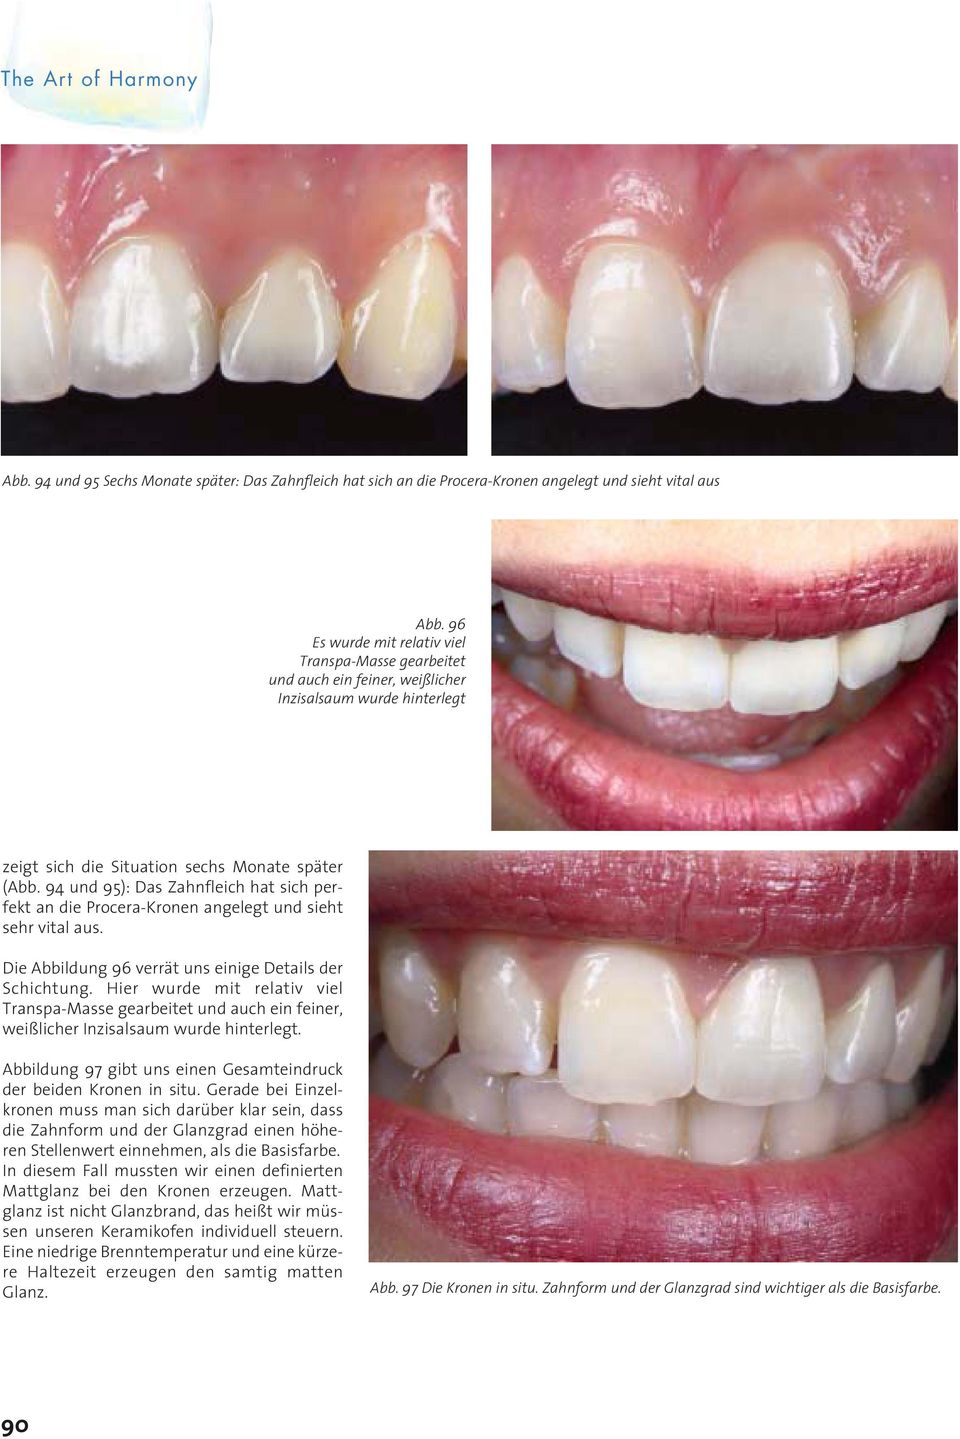 94 und 95): Das Zahnfleich hat sich perfekt an die Procera-Kronen angelegt und sieht sehr vital aus. Die Abbildung 96 verrät uns einige Details der Schichtung.